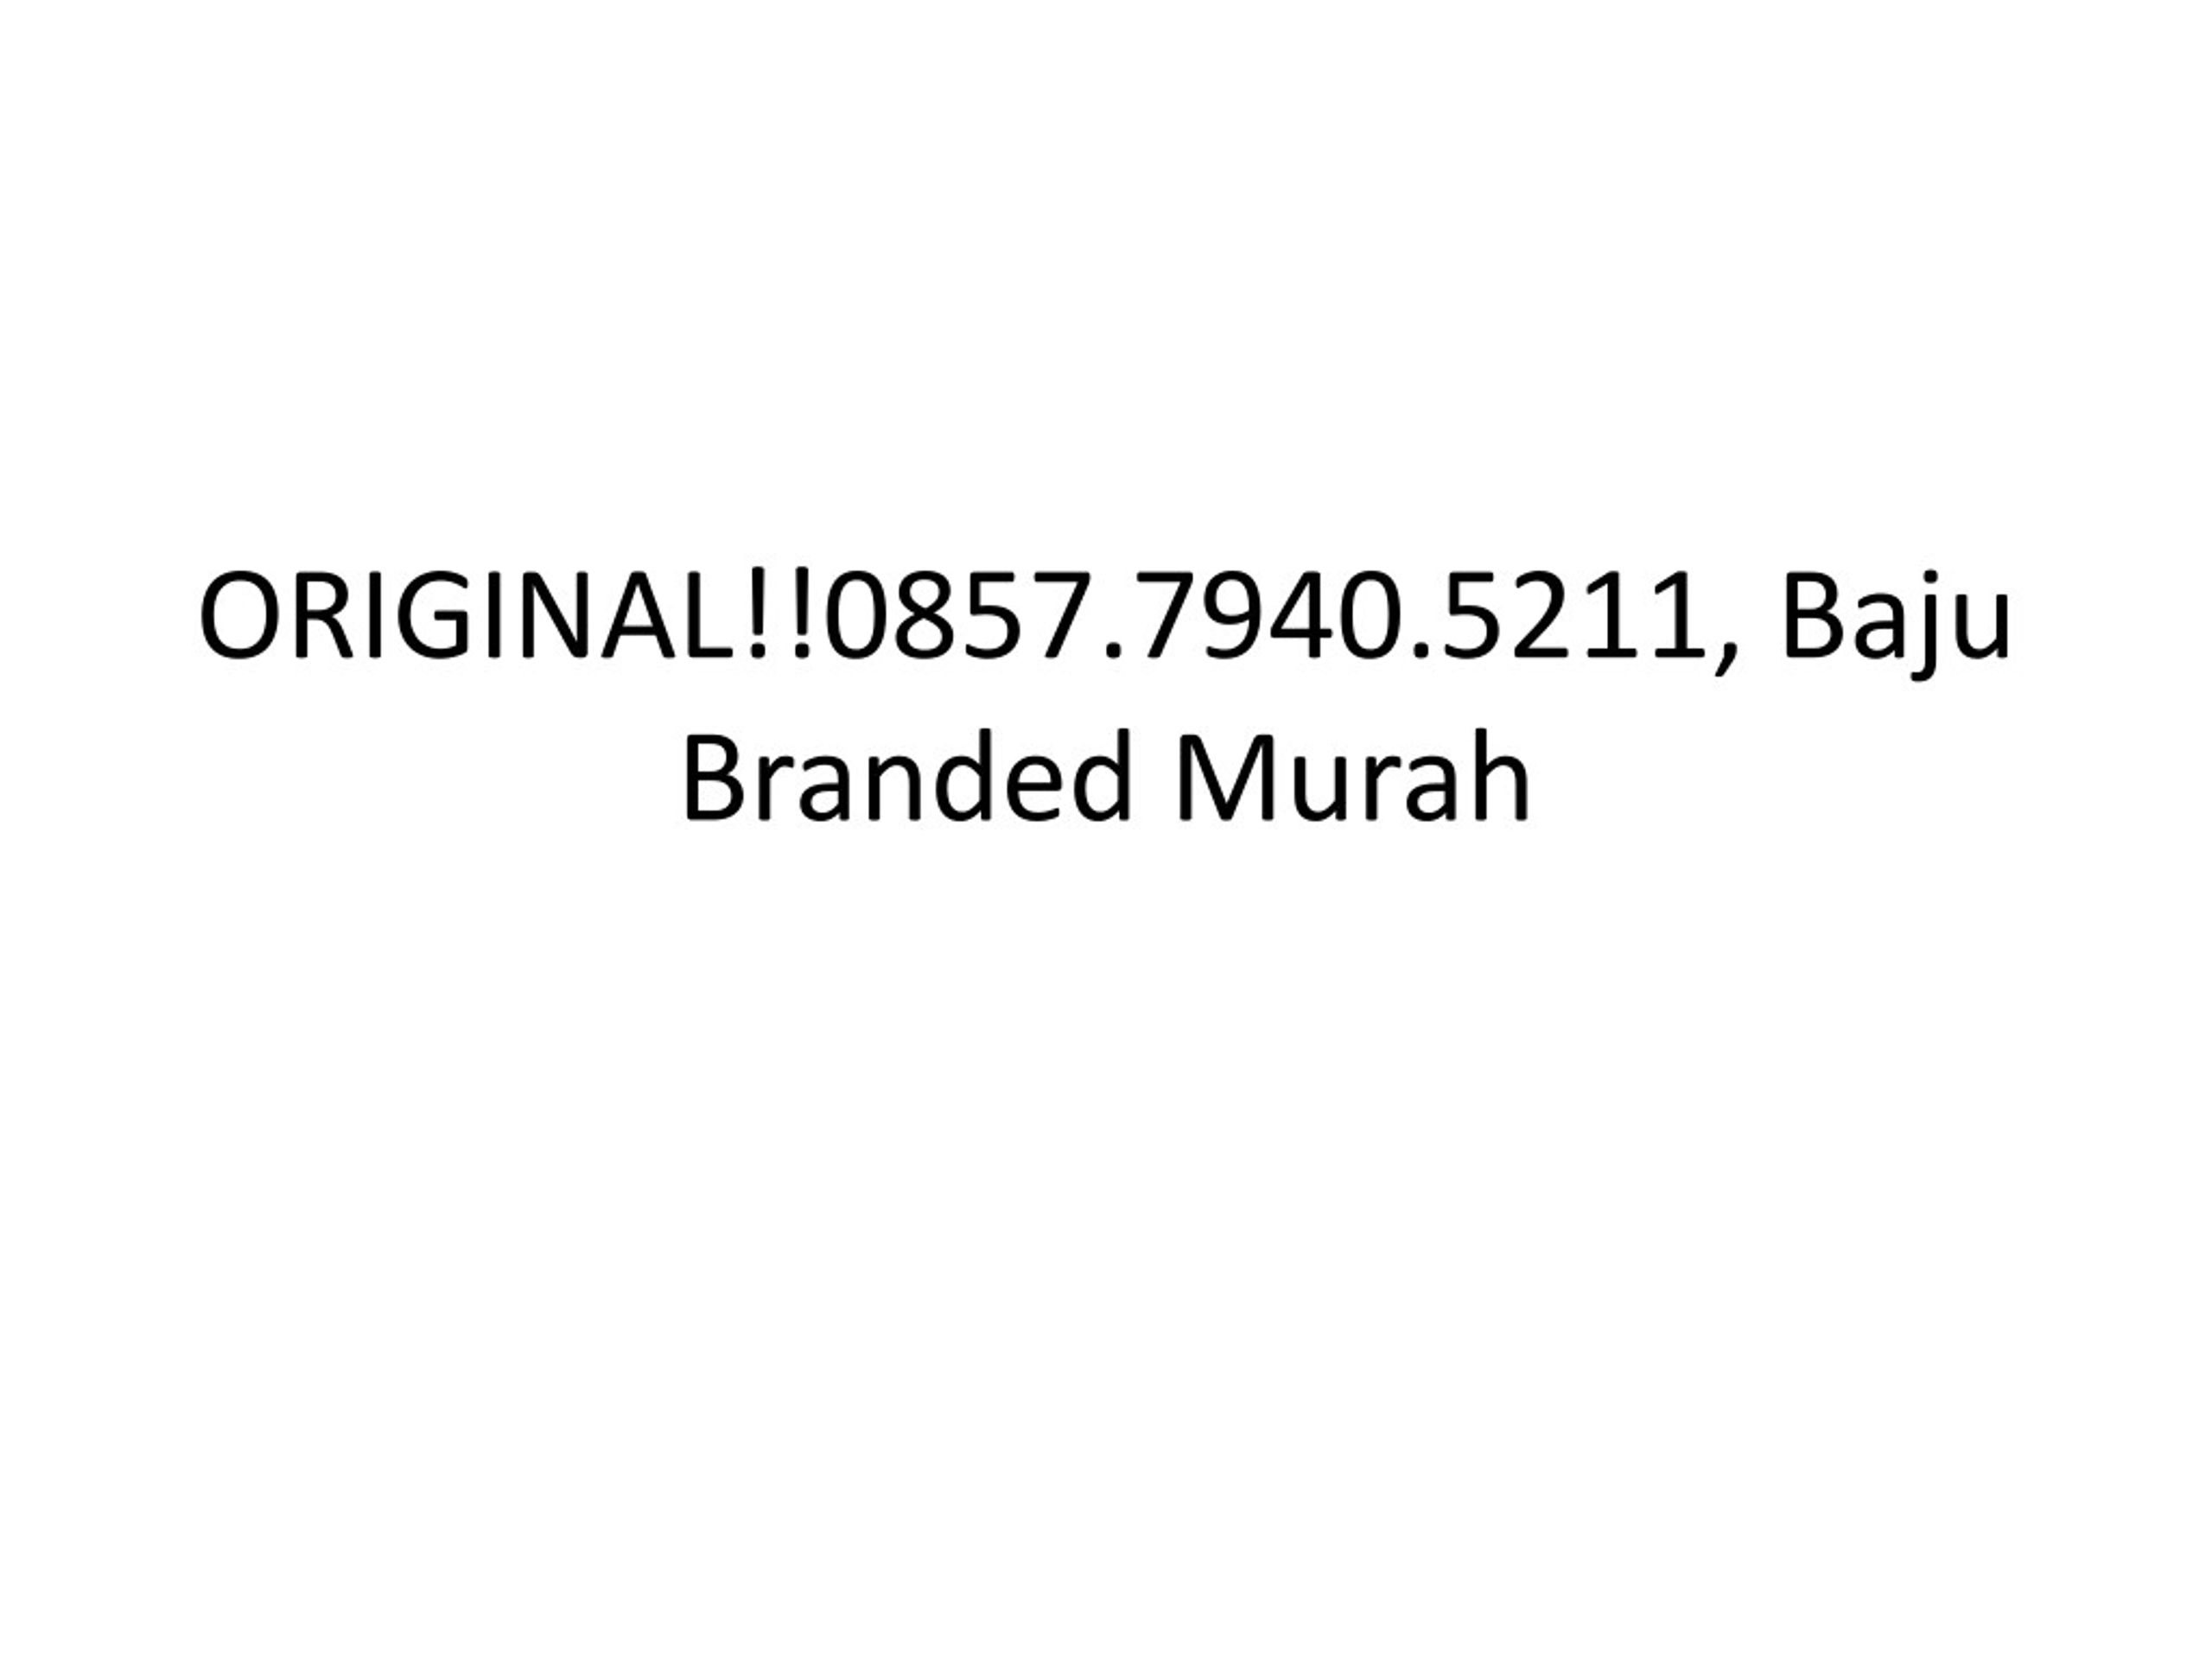 PPT ORIGINAL 0857 7940 5211 Baju  Branded Murah 